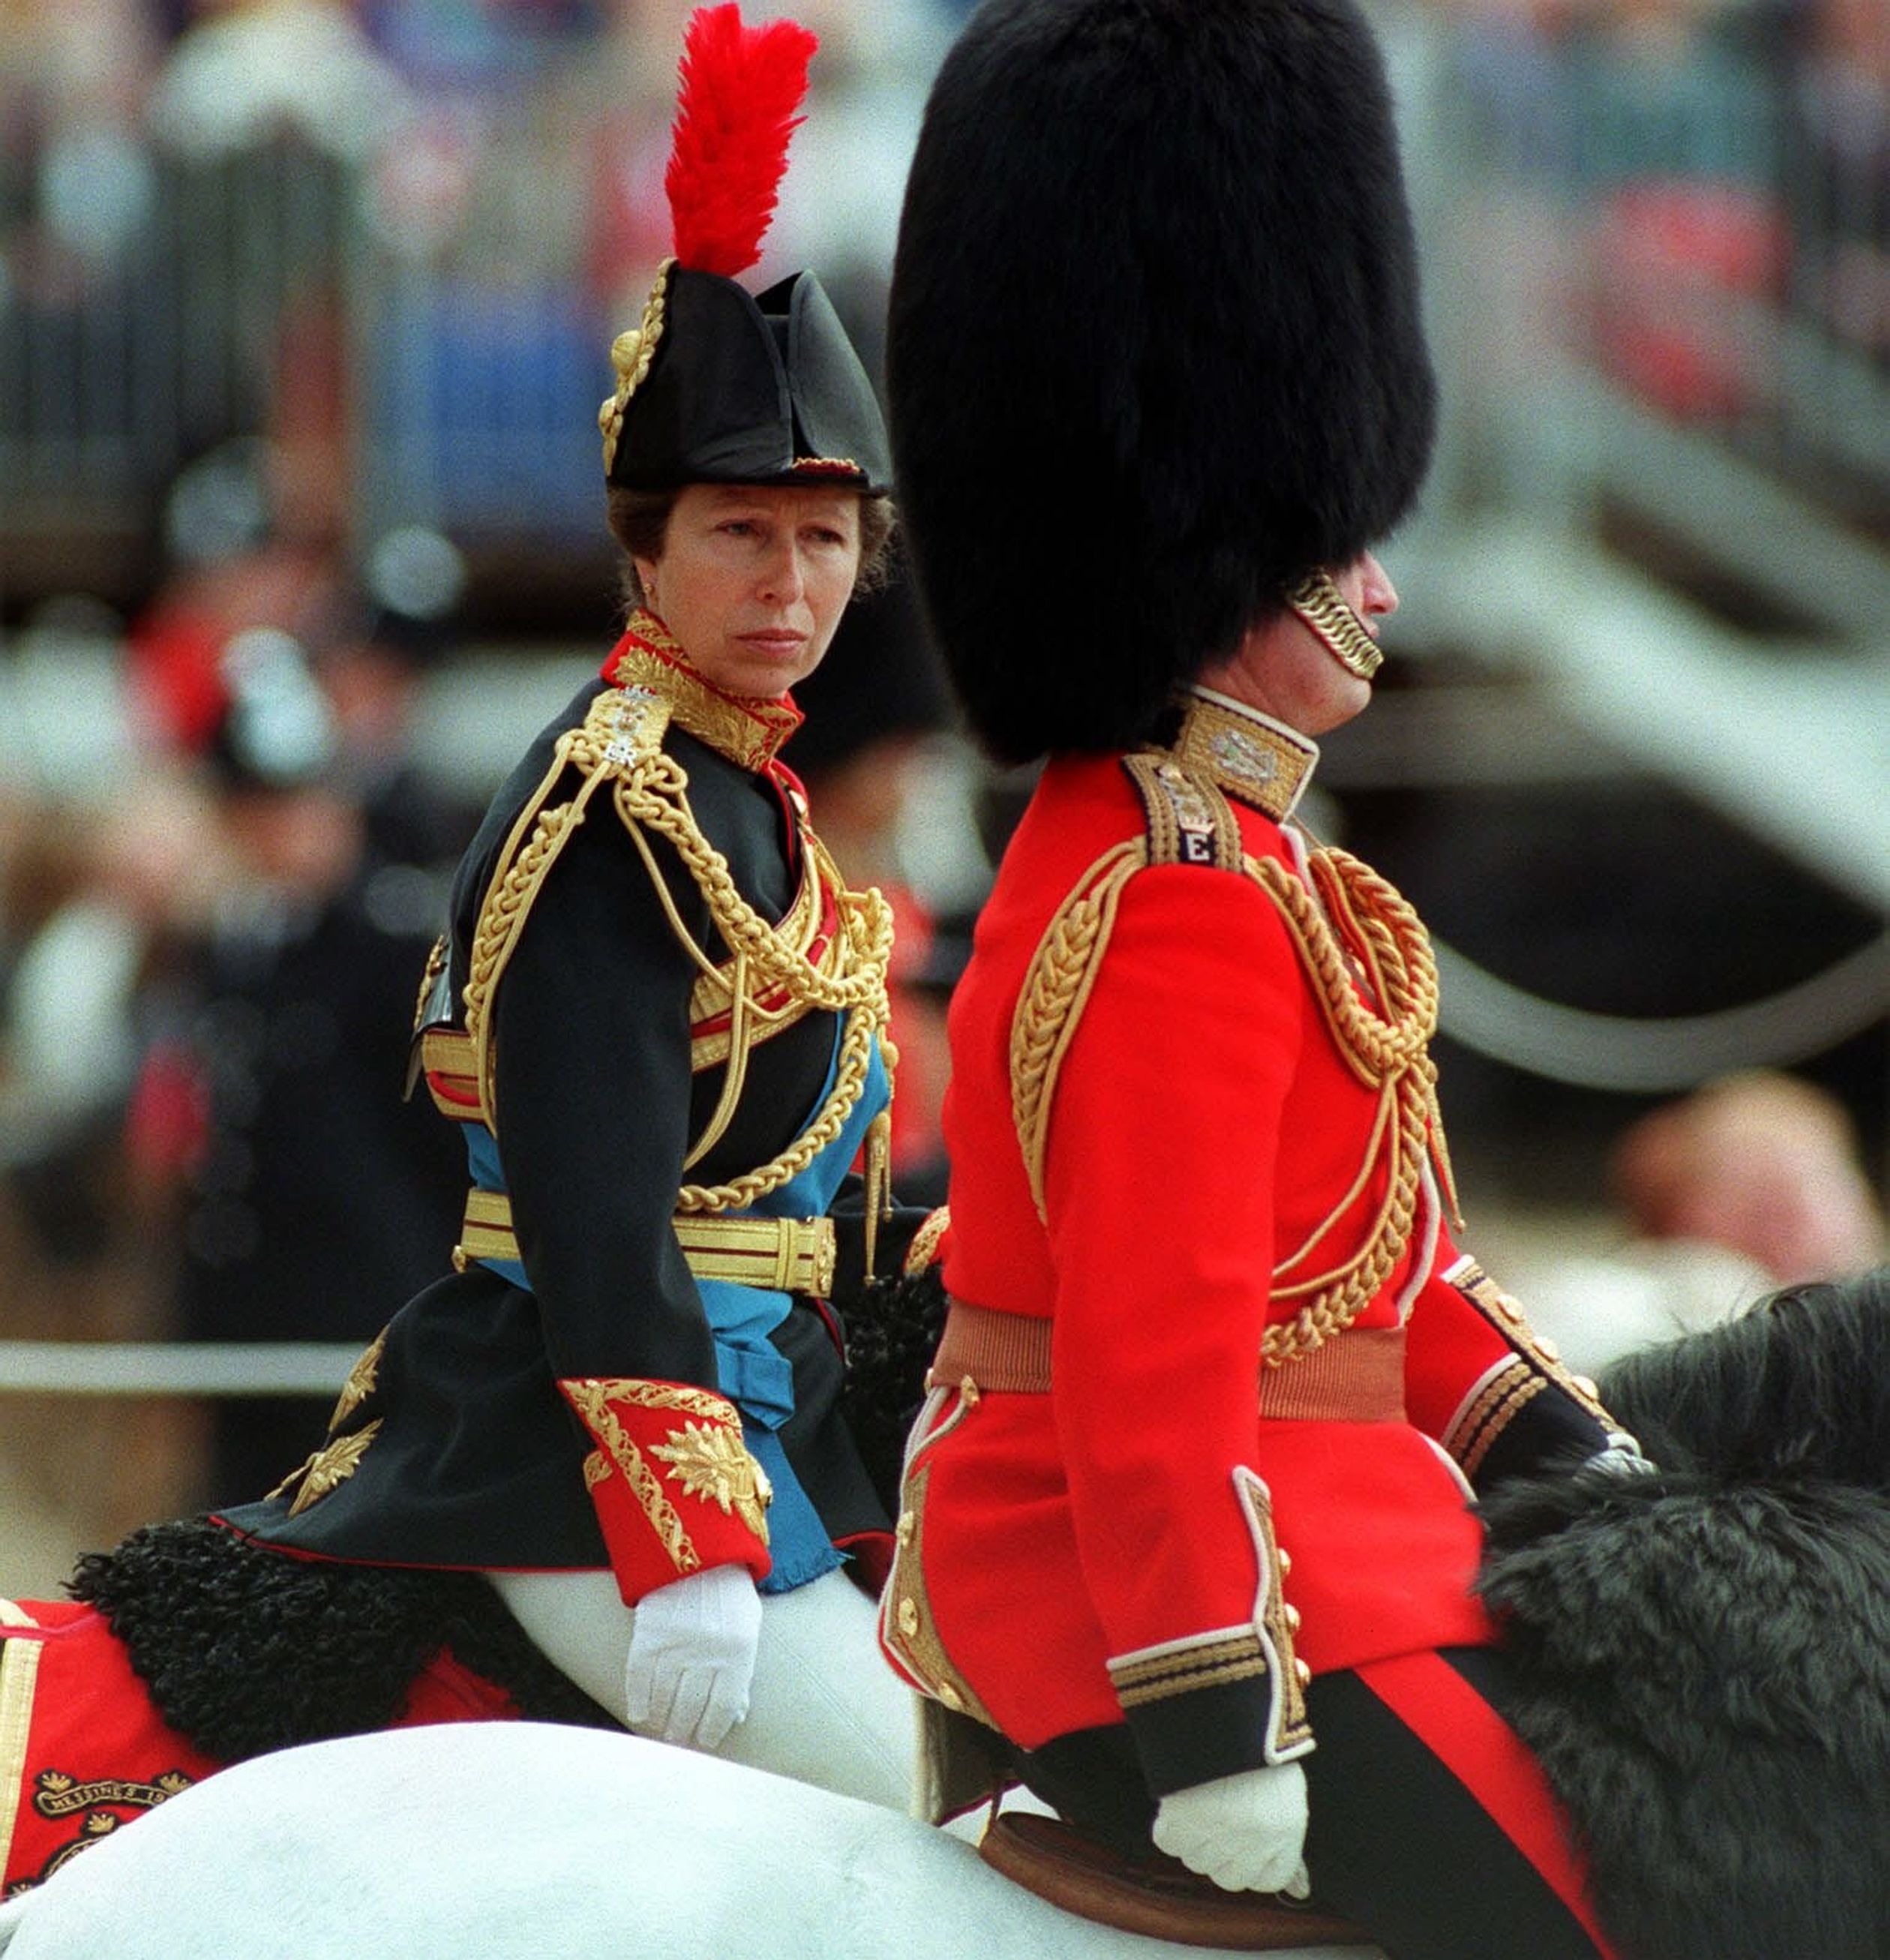 De Princess Royal te paard tijdens Trooping the Colour, de officiële viering van de verjaardag van